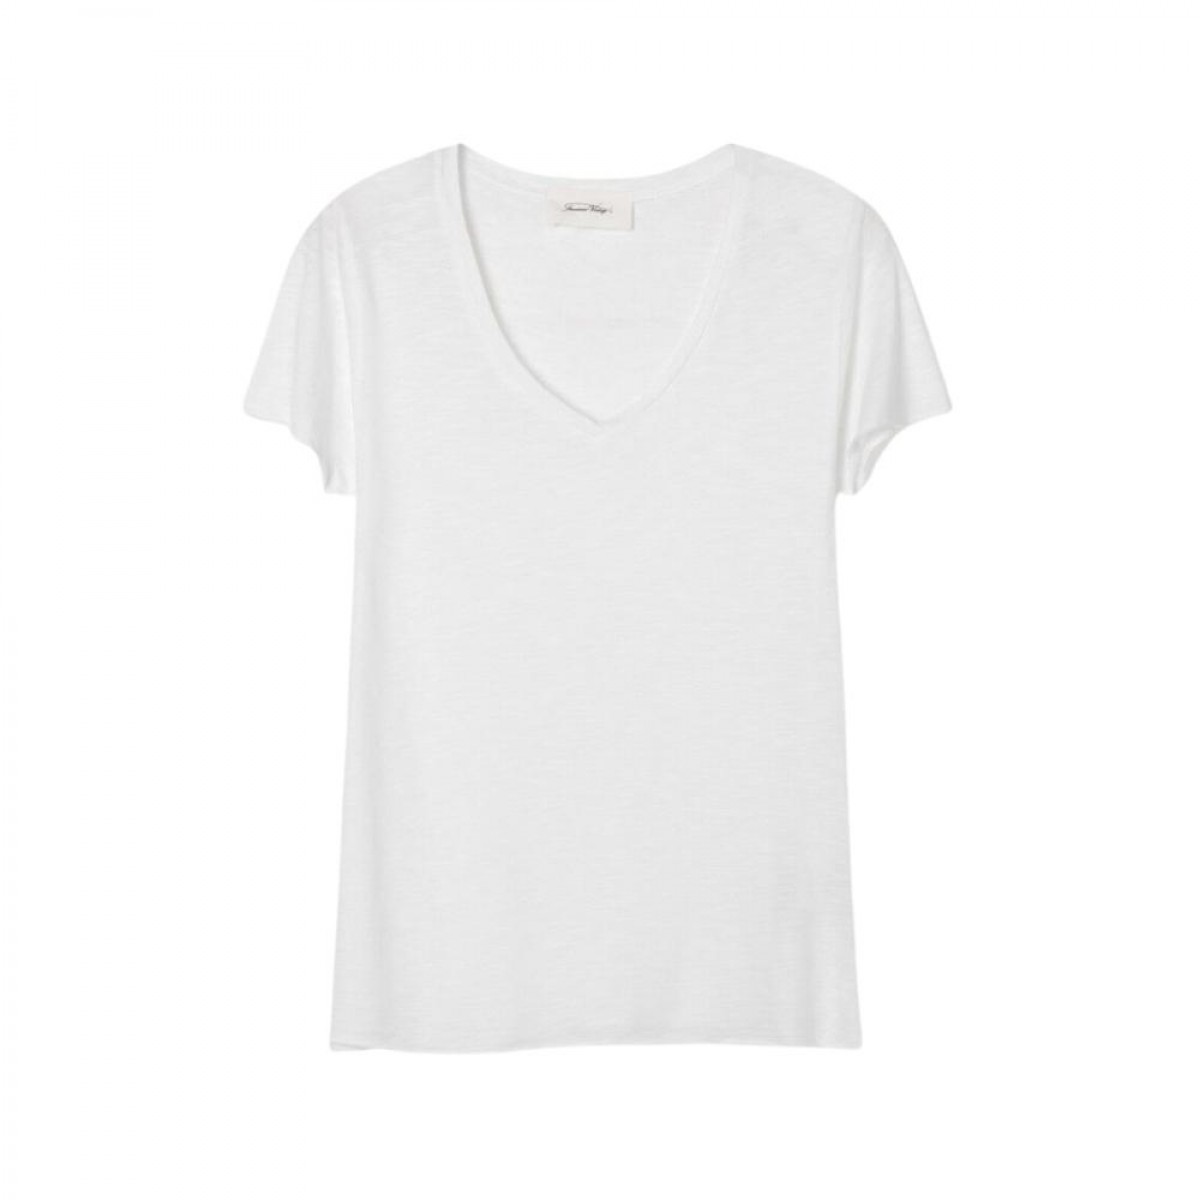 jacksonville t-shirt - white - front